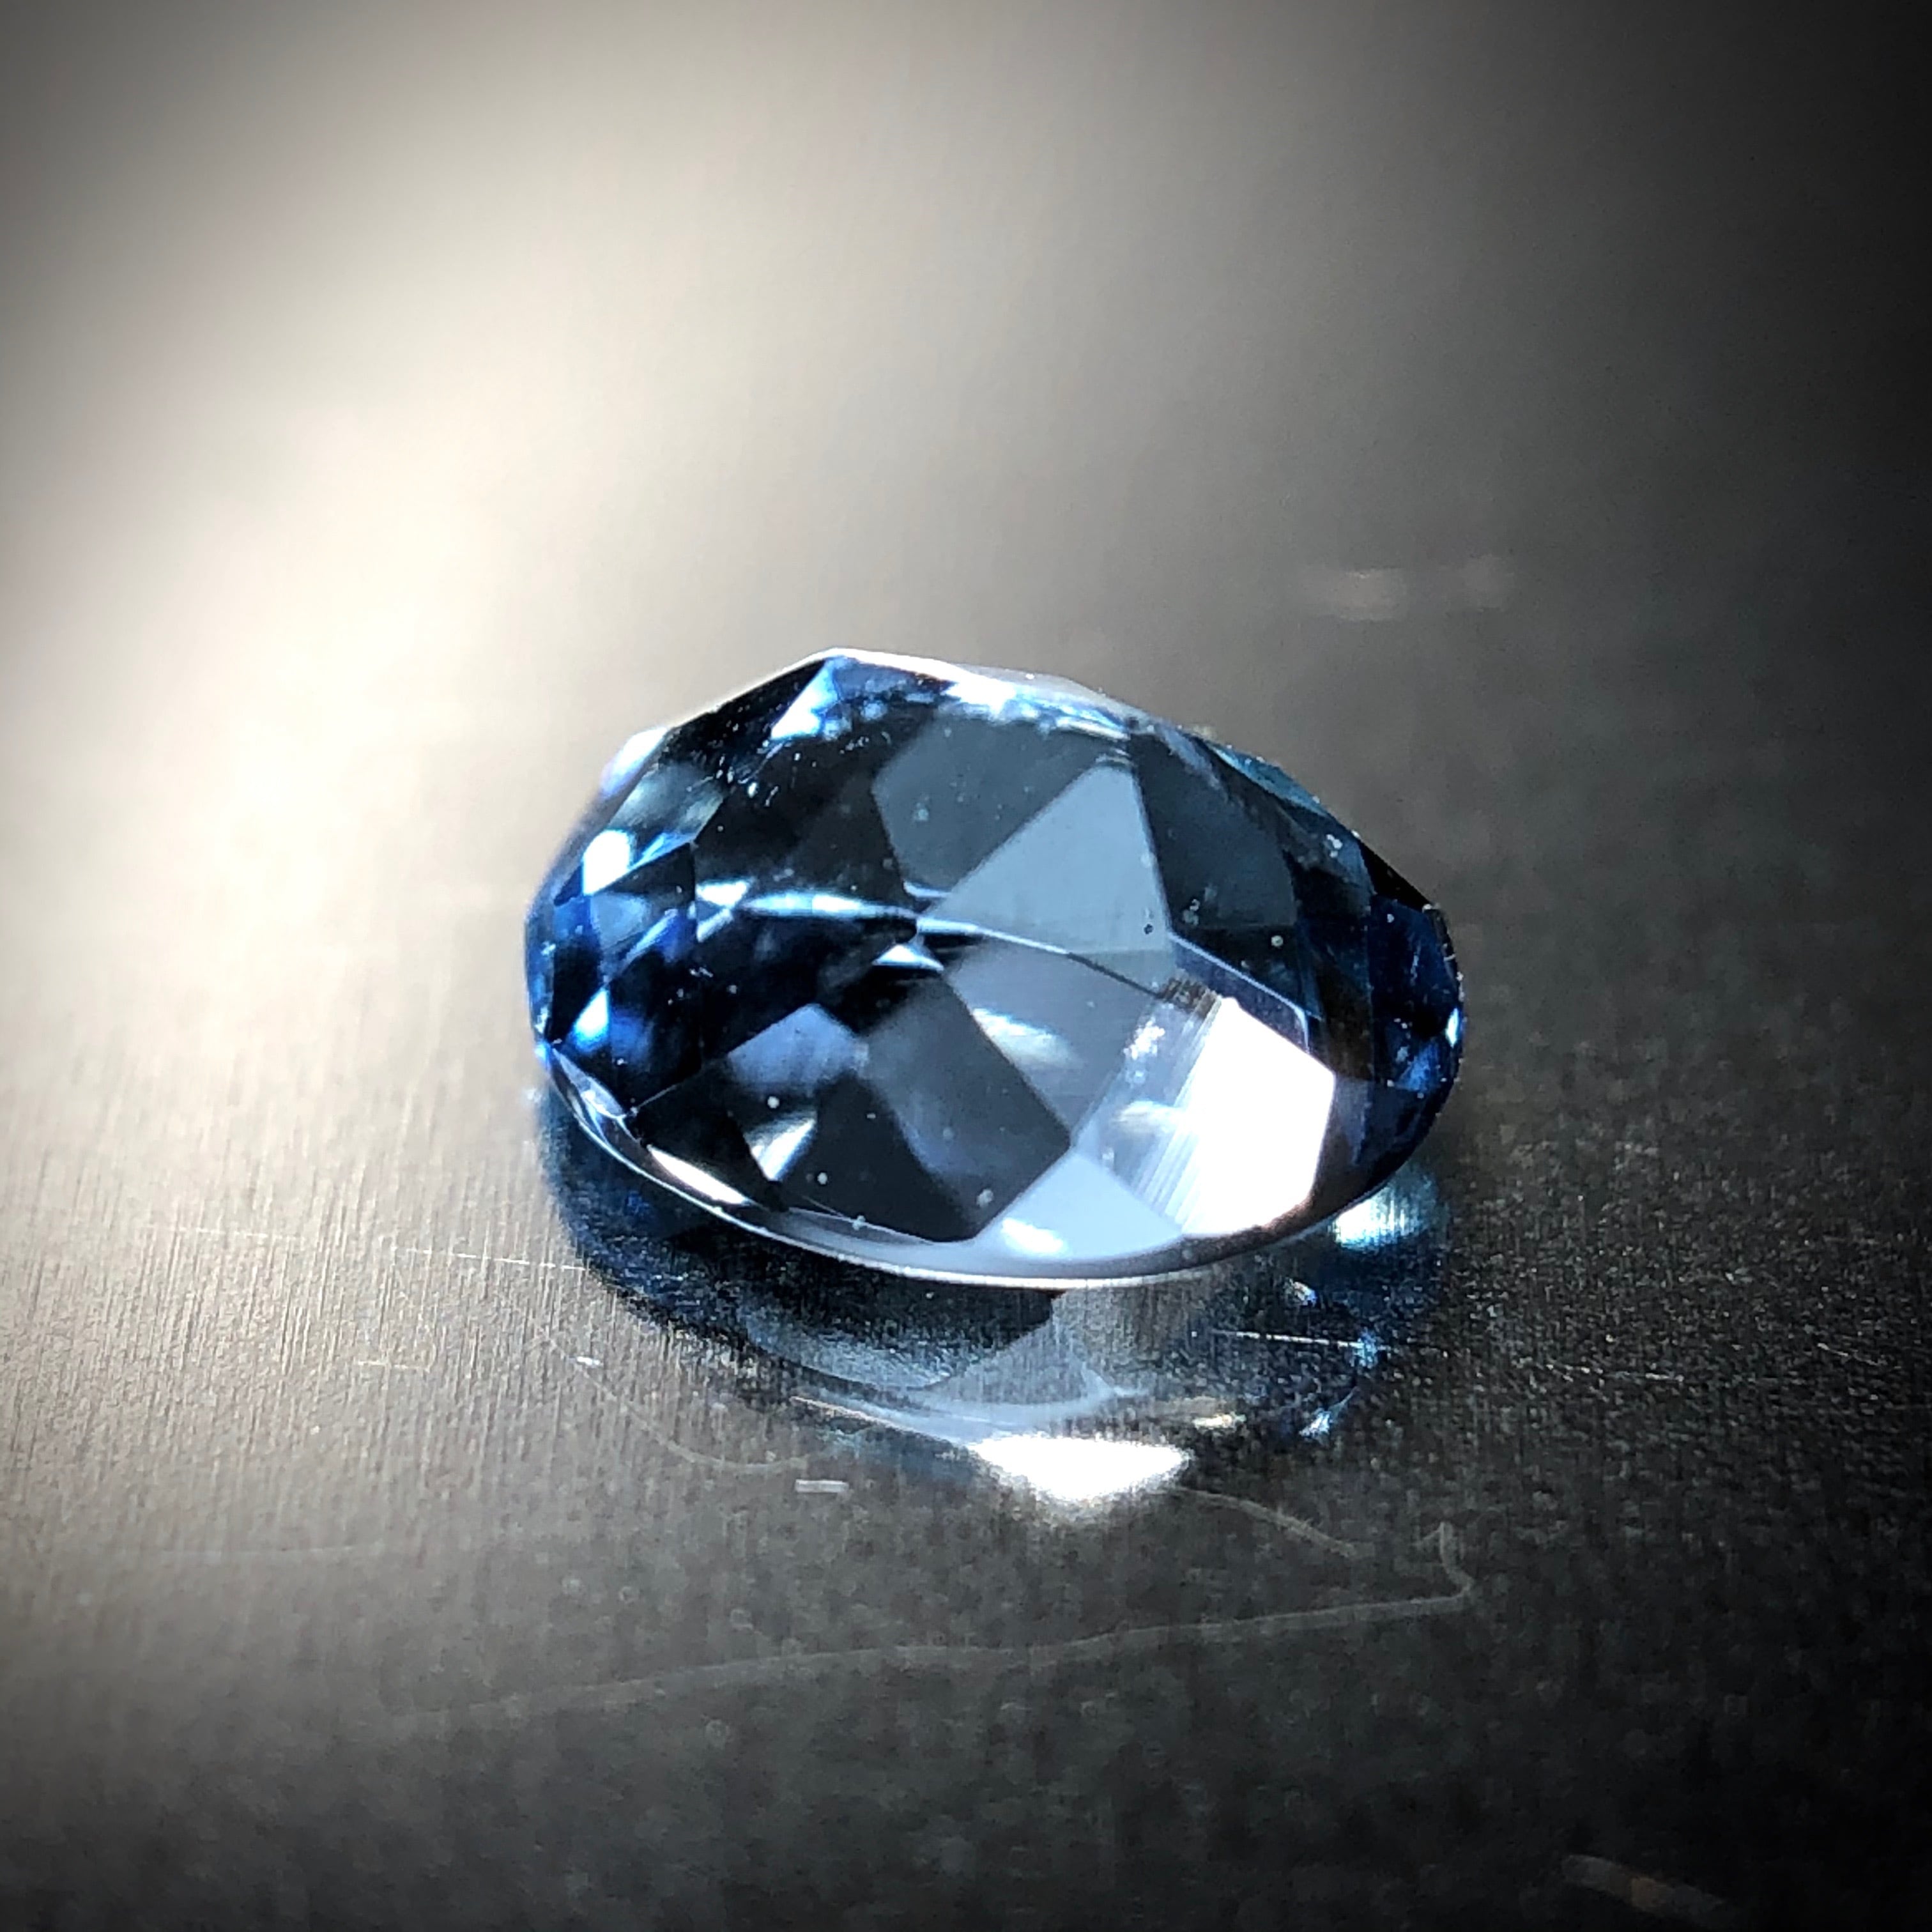 「サンタマリア」の特別な魅力 0.29ct 天然アクアマリン | Frederick’s Gems&Jewelry powered by BASE